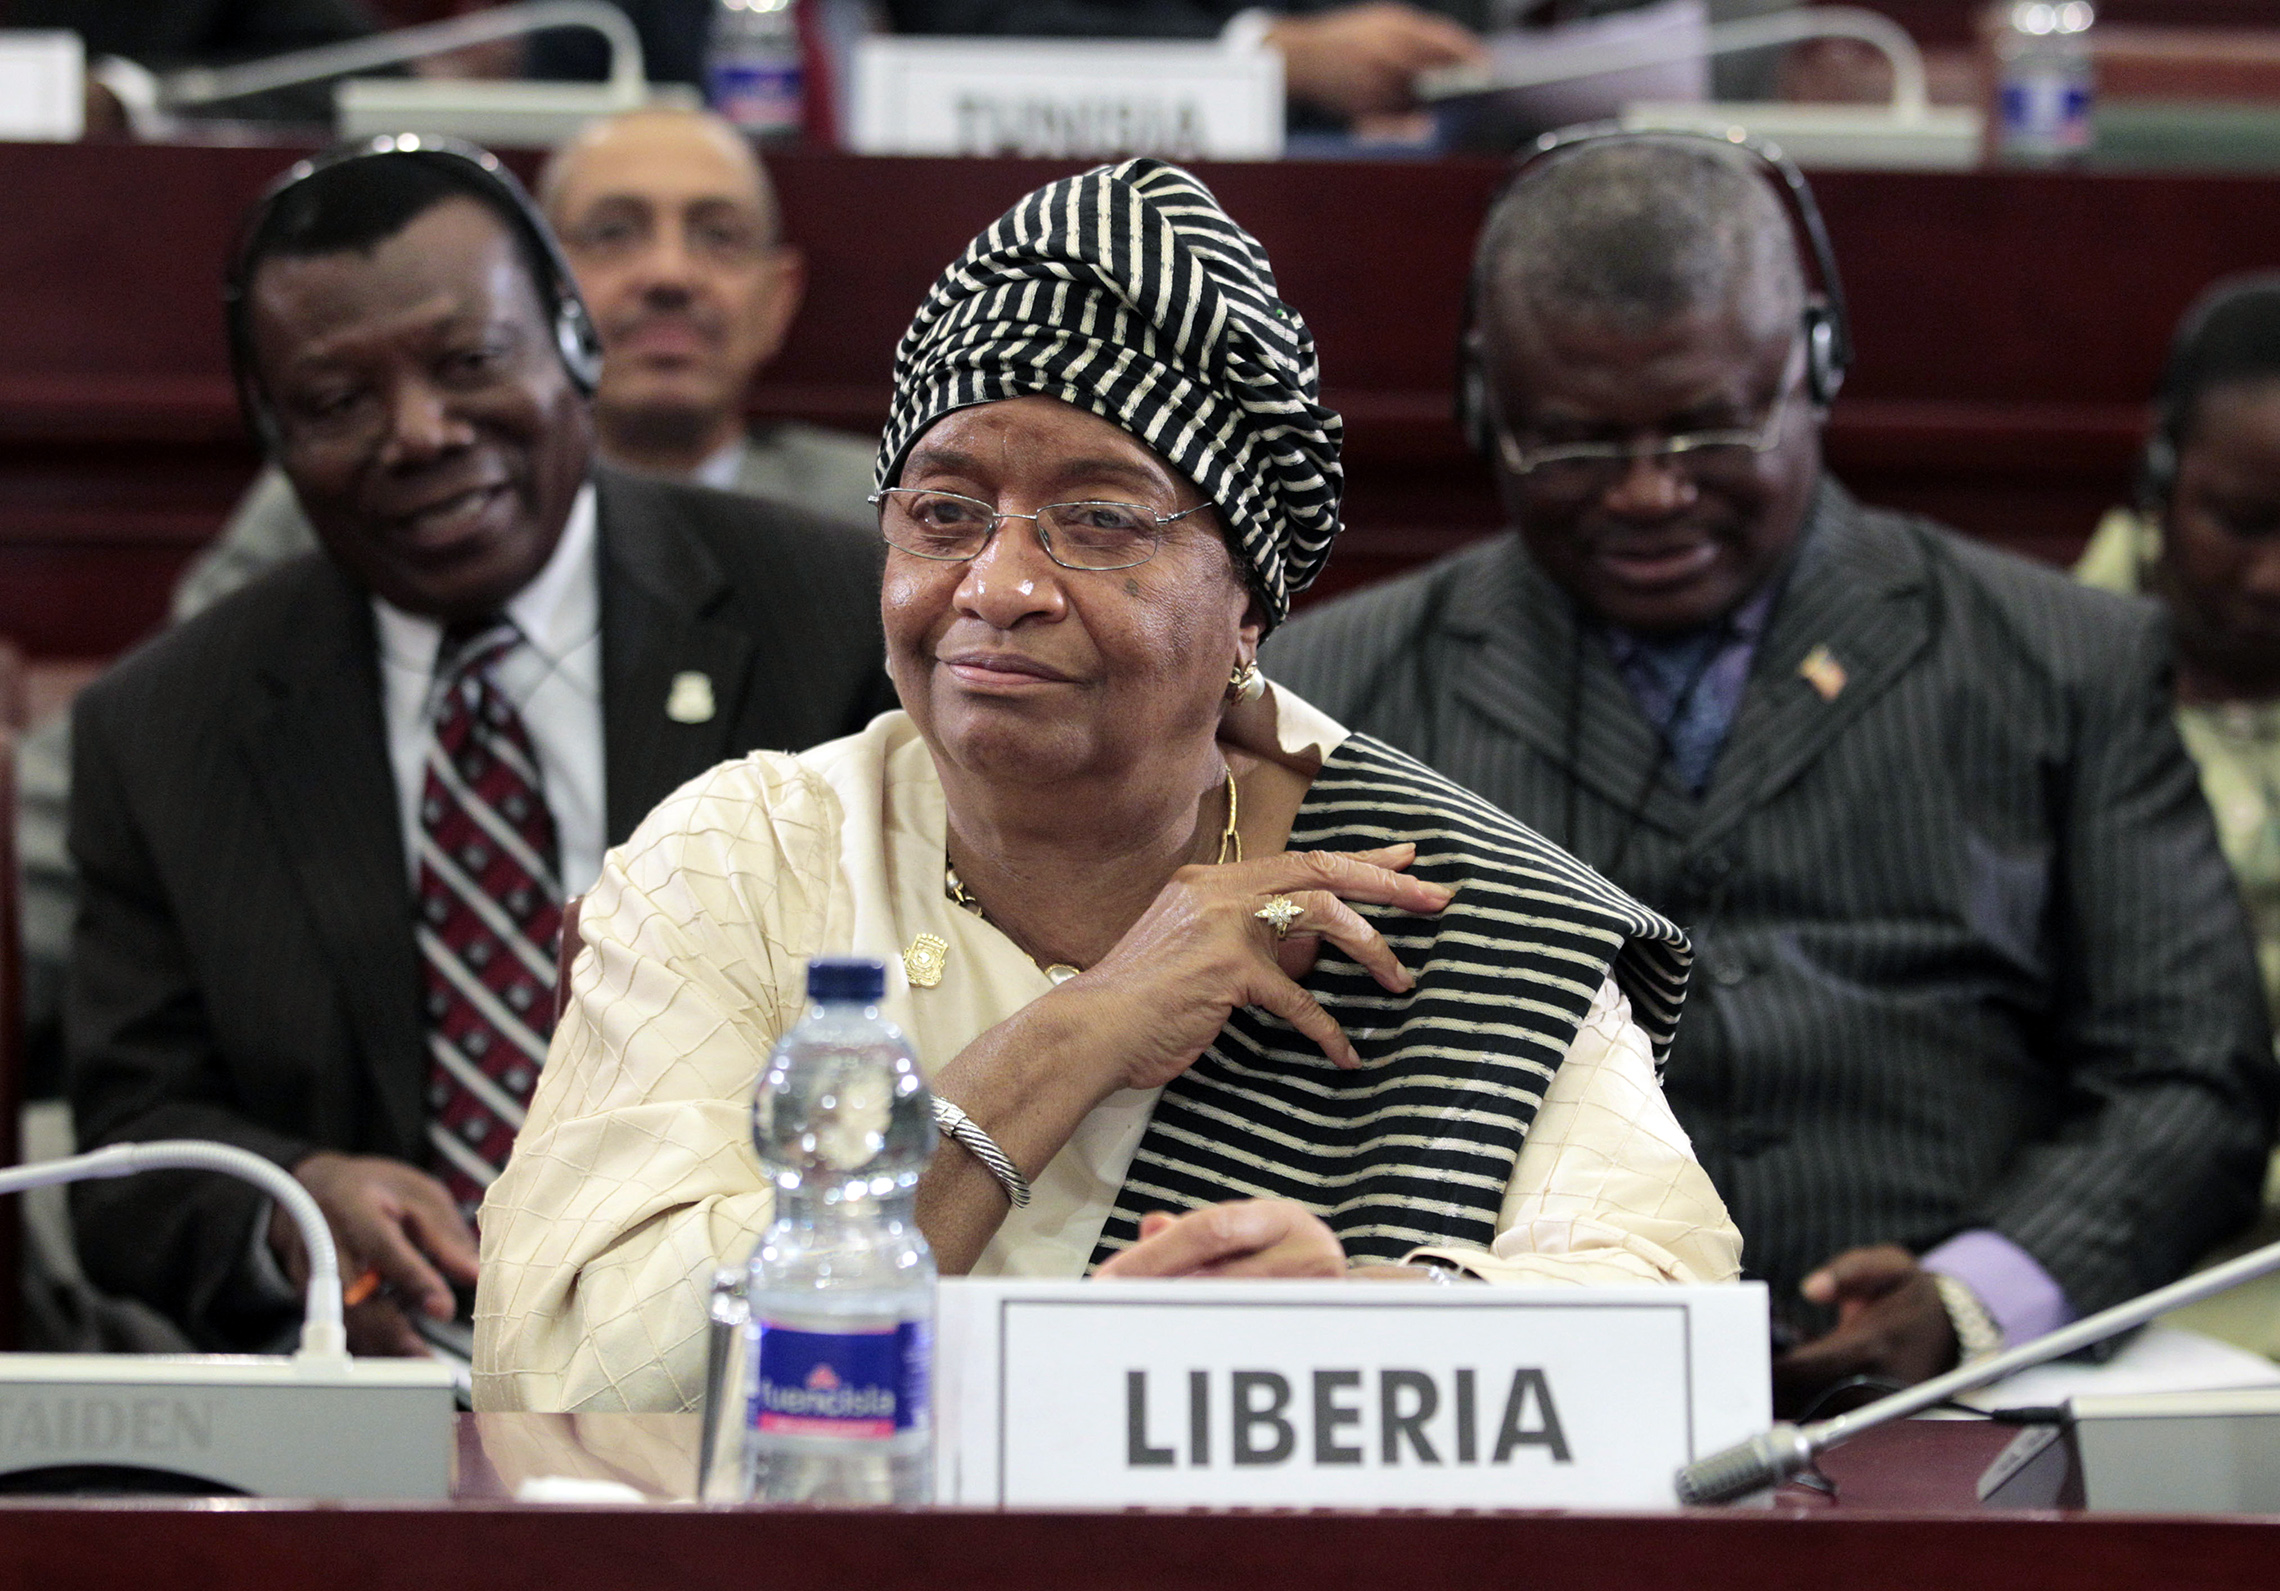 Liberianske præsident Ellen Johnson Sirleaf, set under den afsluttende session af det 17.topmøde i Den Afrikanske Union i Malabo, Ækvatorialguinea, 2011. Dagens session var domineret af debat om uroen i Libyen, hvor Moammar Gaddafi klamrede sig usikkert til magten i lyset af et folkeligt oprør mod hans 42-årige styre. Liberias præsident Ellen Johnson Sirleaf, set under den afsluttende session på det 17.topmøde i Den Afrikanske Union i Malabo, Ækvatorialguinea, 2011. Dagens session var domineret af debat om uroen i Libyen, hvor Moammar Gaddafi klamrede sig usikkert til magten i lyset af et folkeligt oprør mod hans 42-årige styre. (AP)'s session was dominated by debate over the turmoil in Libya, where Moammar Gadhafi clung precariously to power in the face of a popular uprising against his 42-year rule. (AP Images/Rebecca Blackwell)